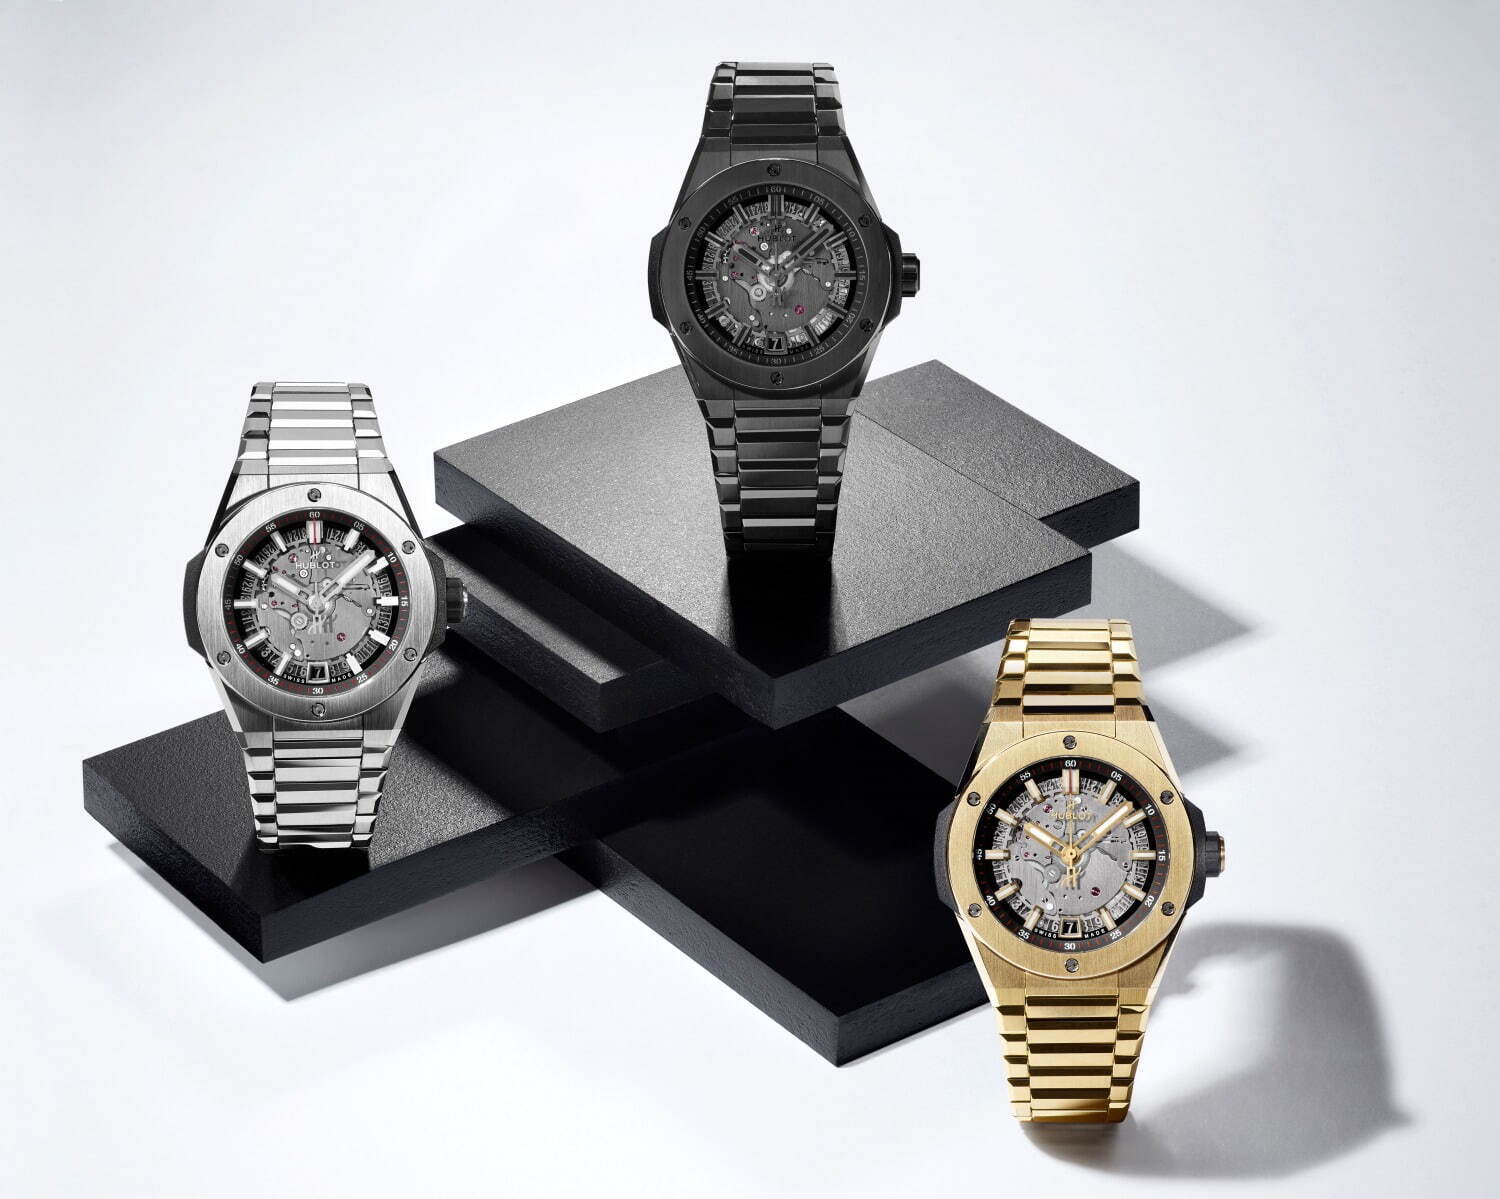 ウブロ新腕時計、薄型ケースのブレスレットモデル「ビッグ・バン ...